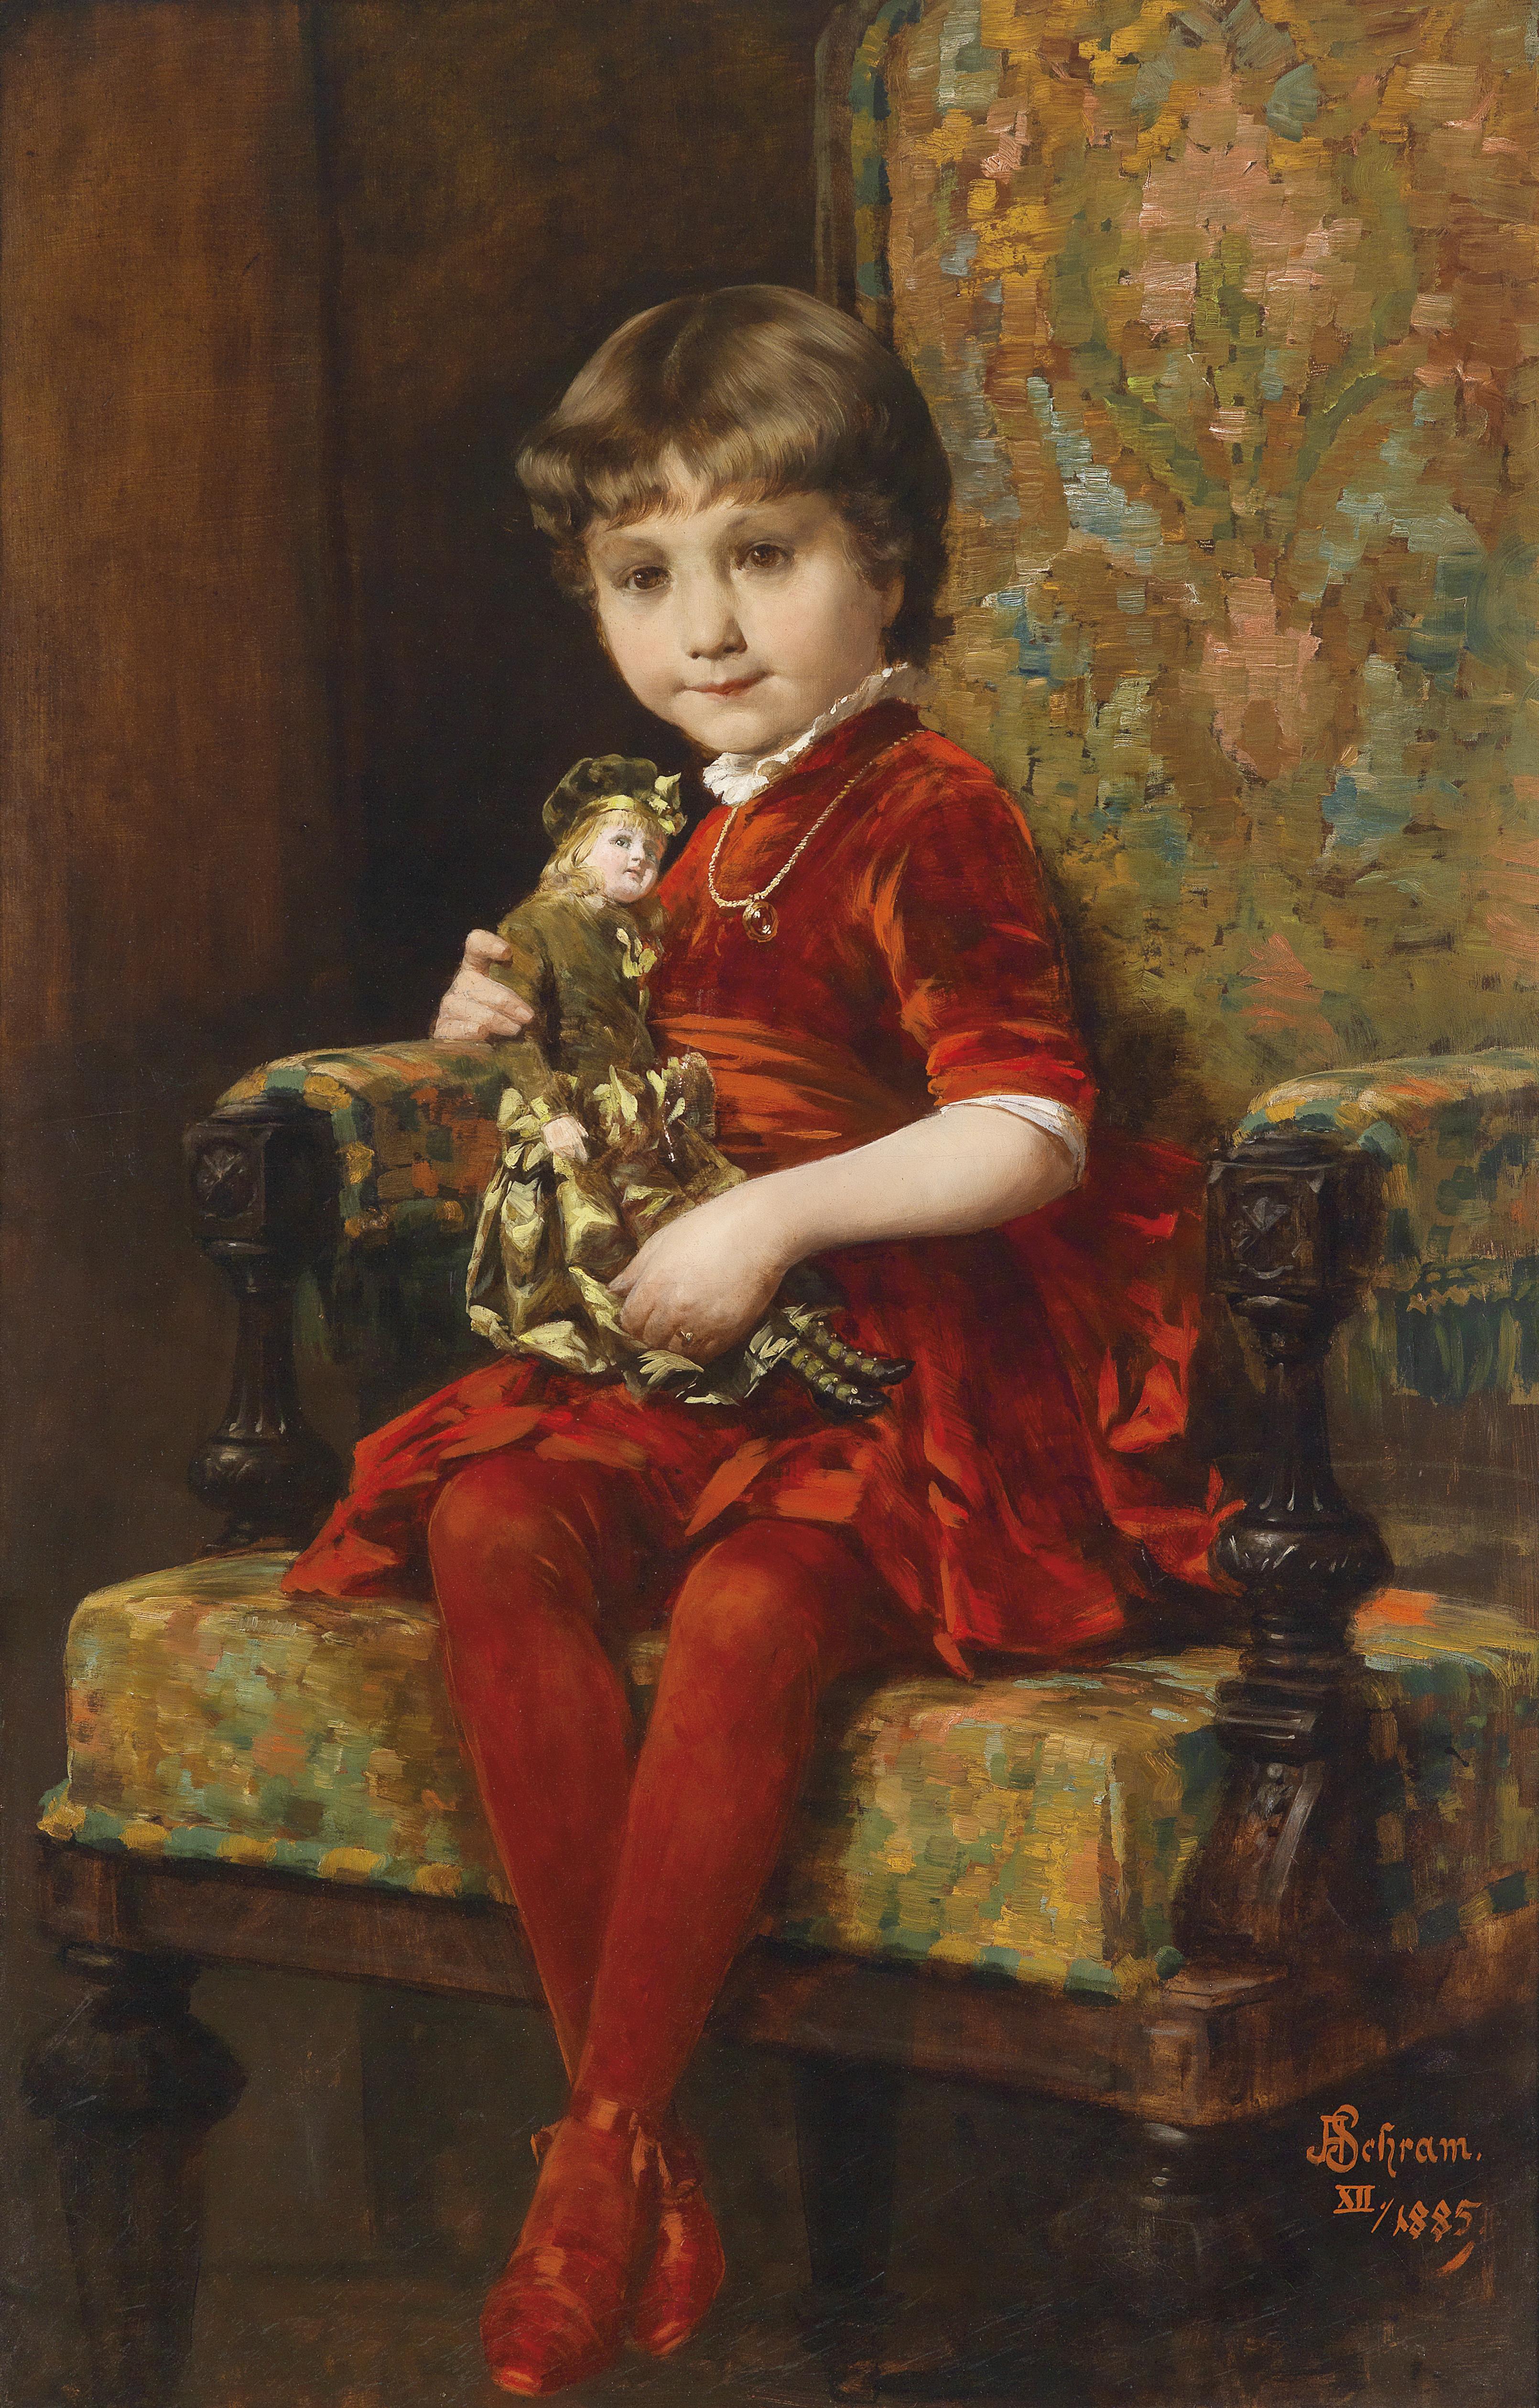 File:Aloys Hannes Schramm Mädchen mit Puppe 1885.jpg.